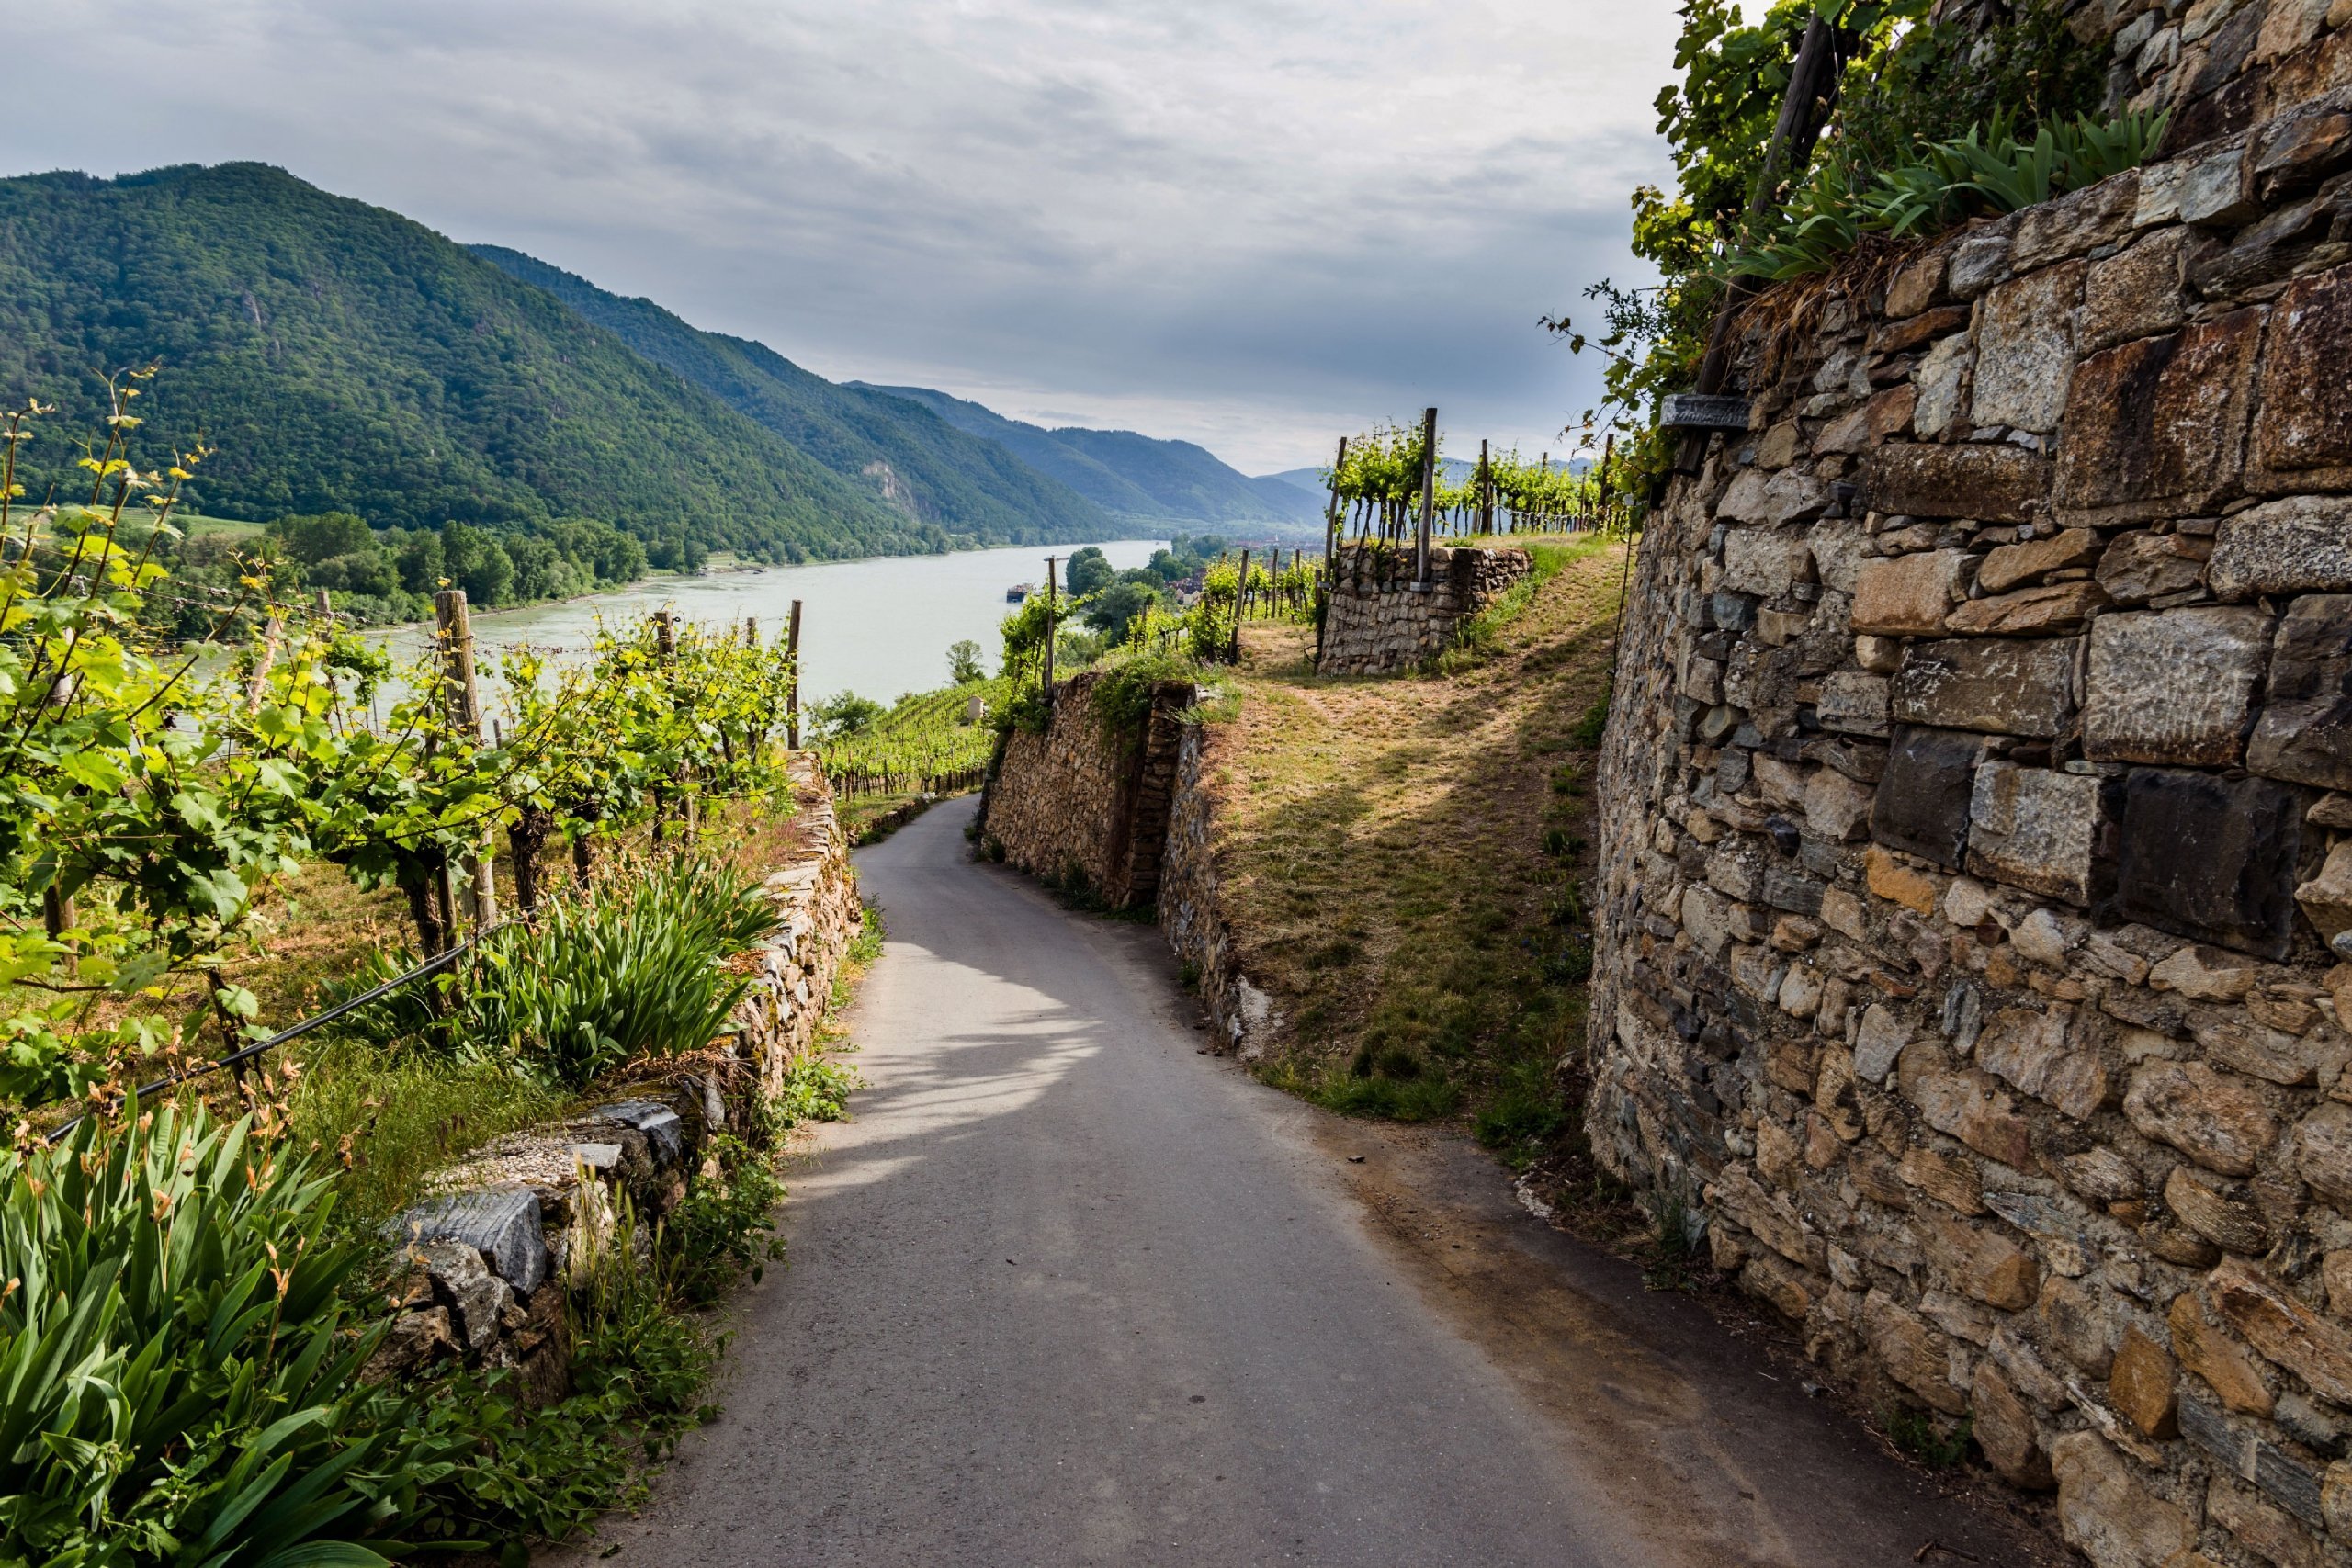 Germany & Austria: The Danube River
